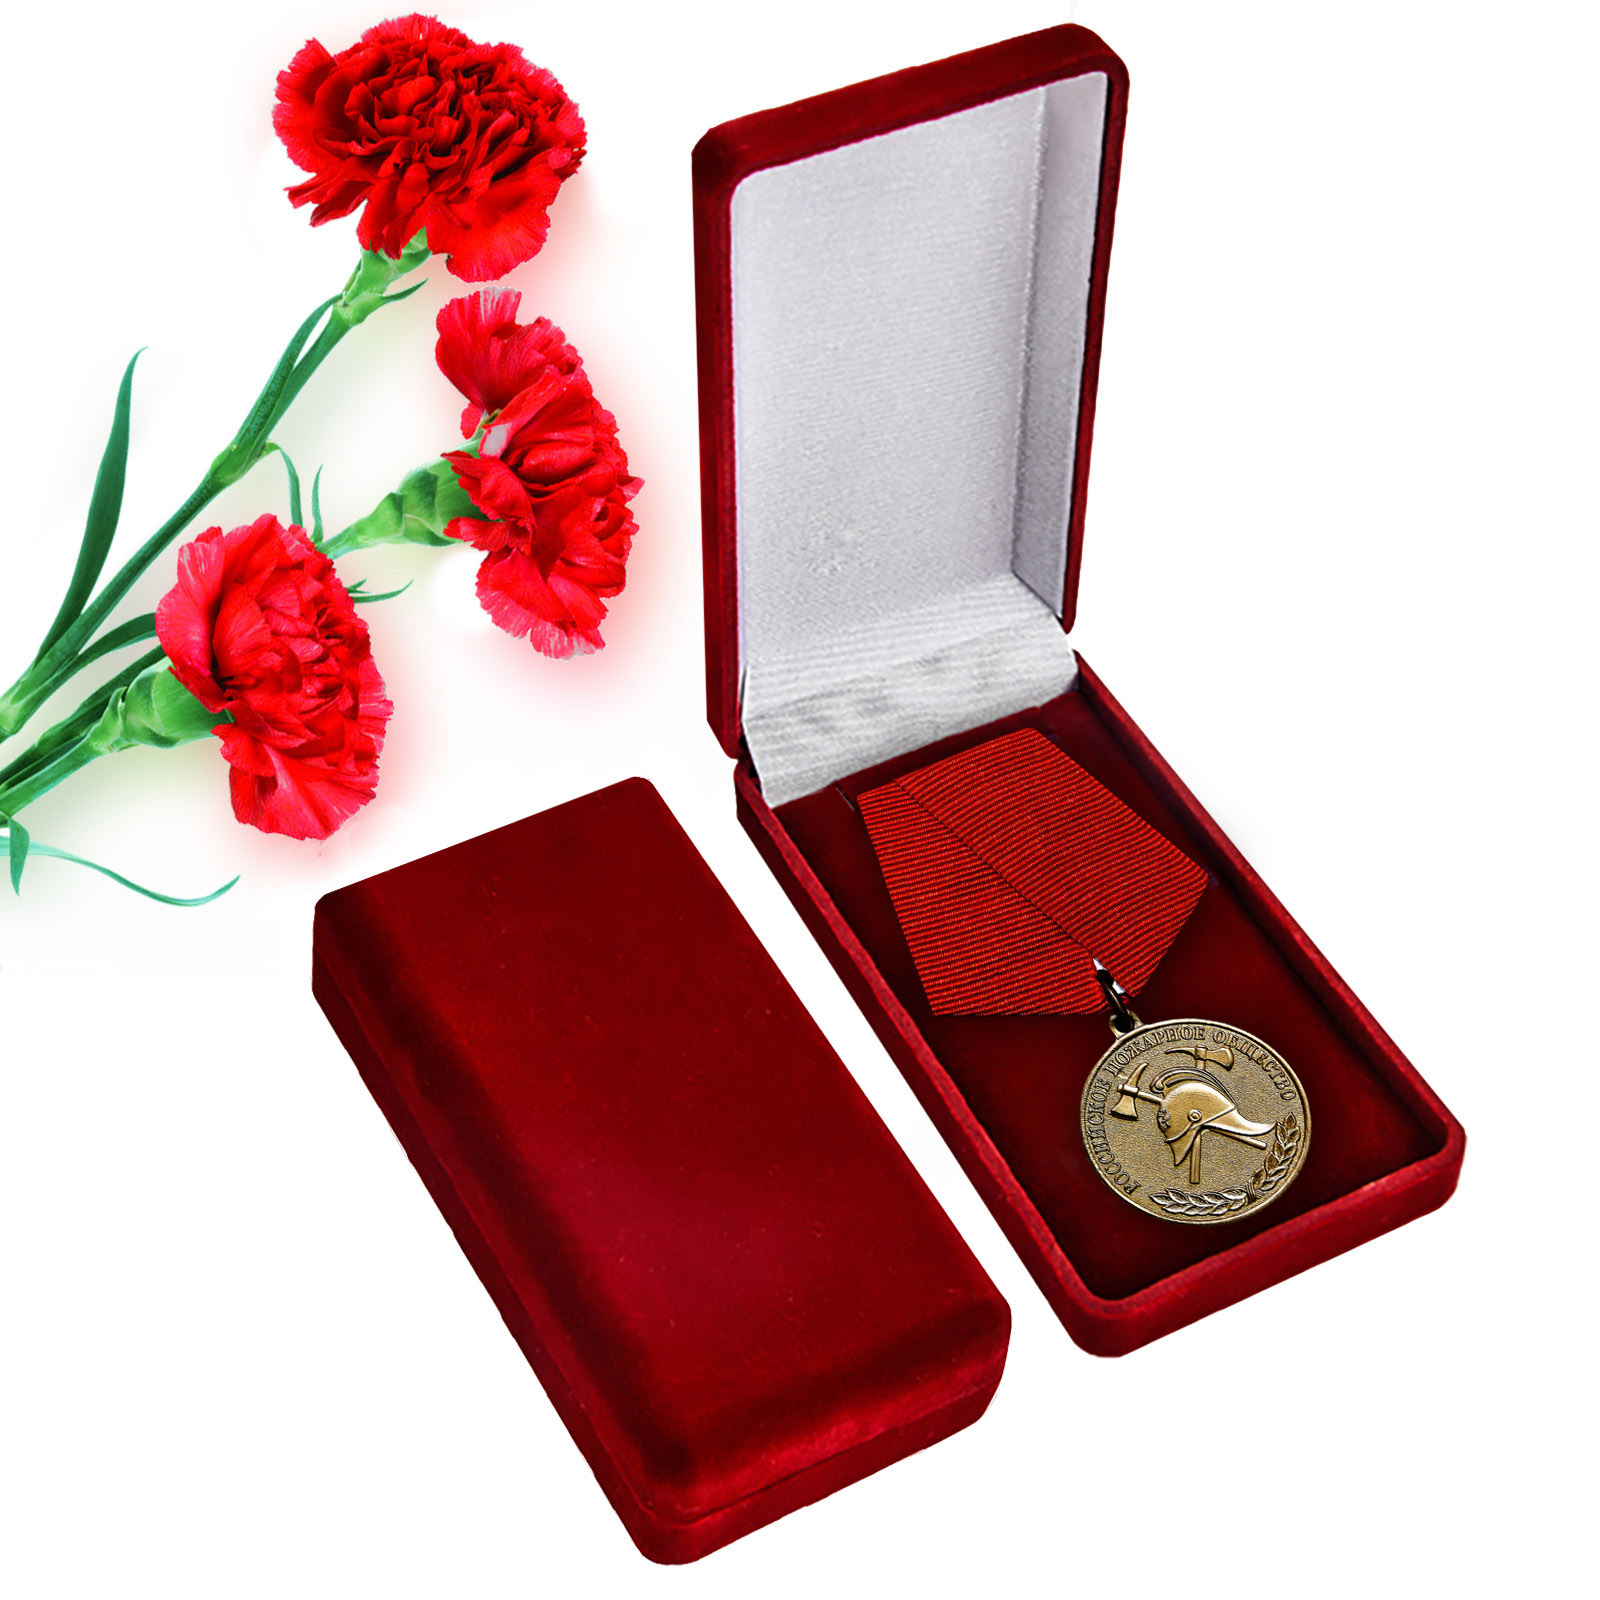 Медаль "За образцовую службу" Российского Пожарного общества